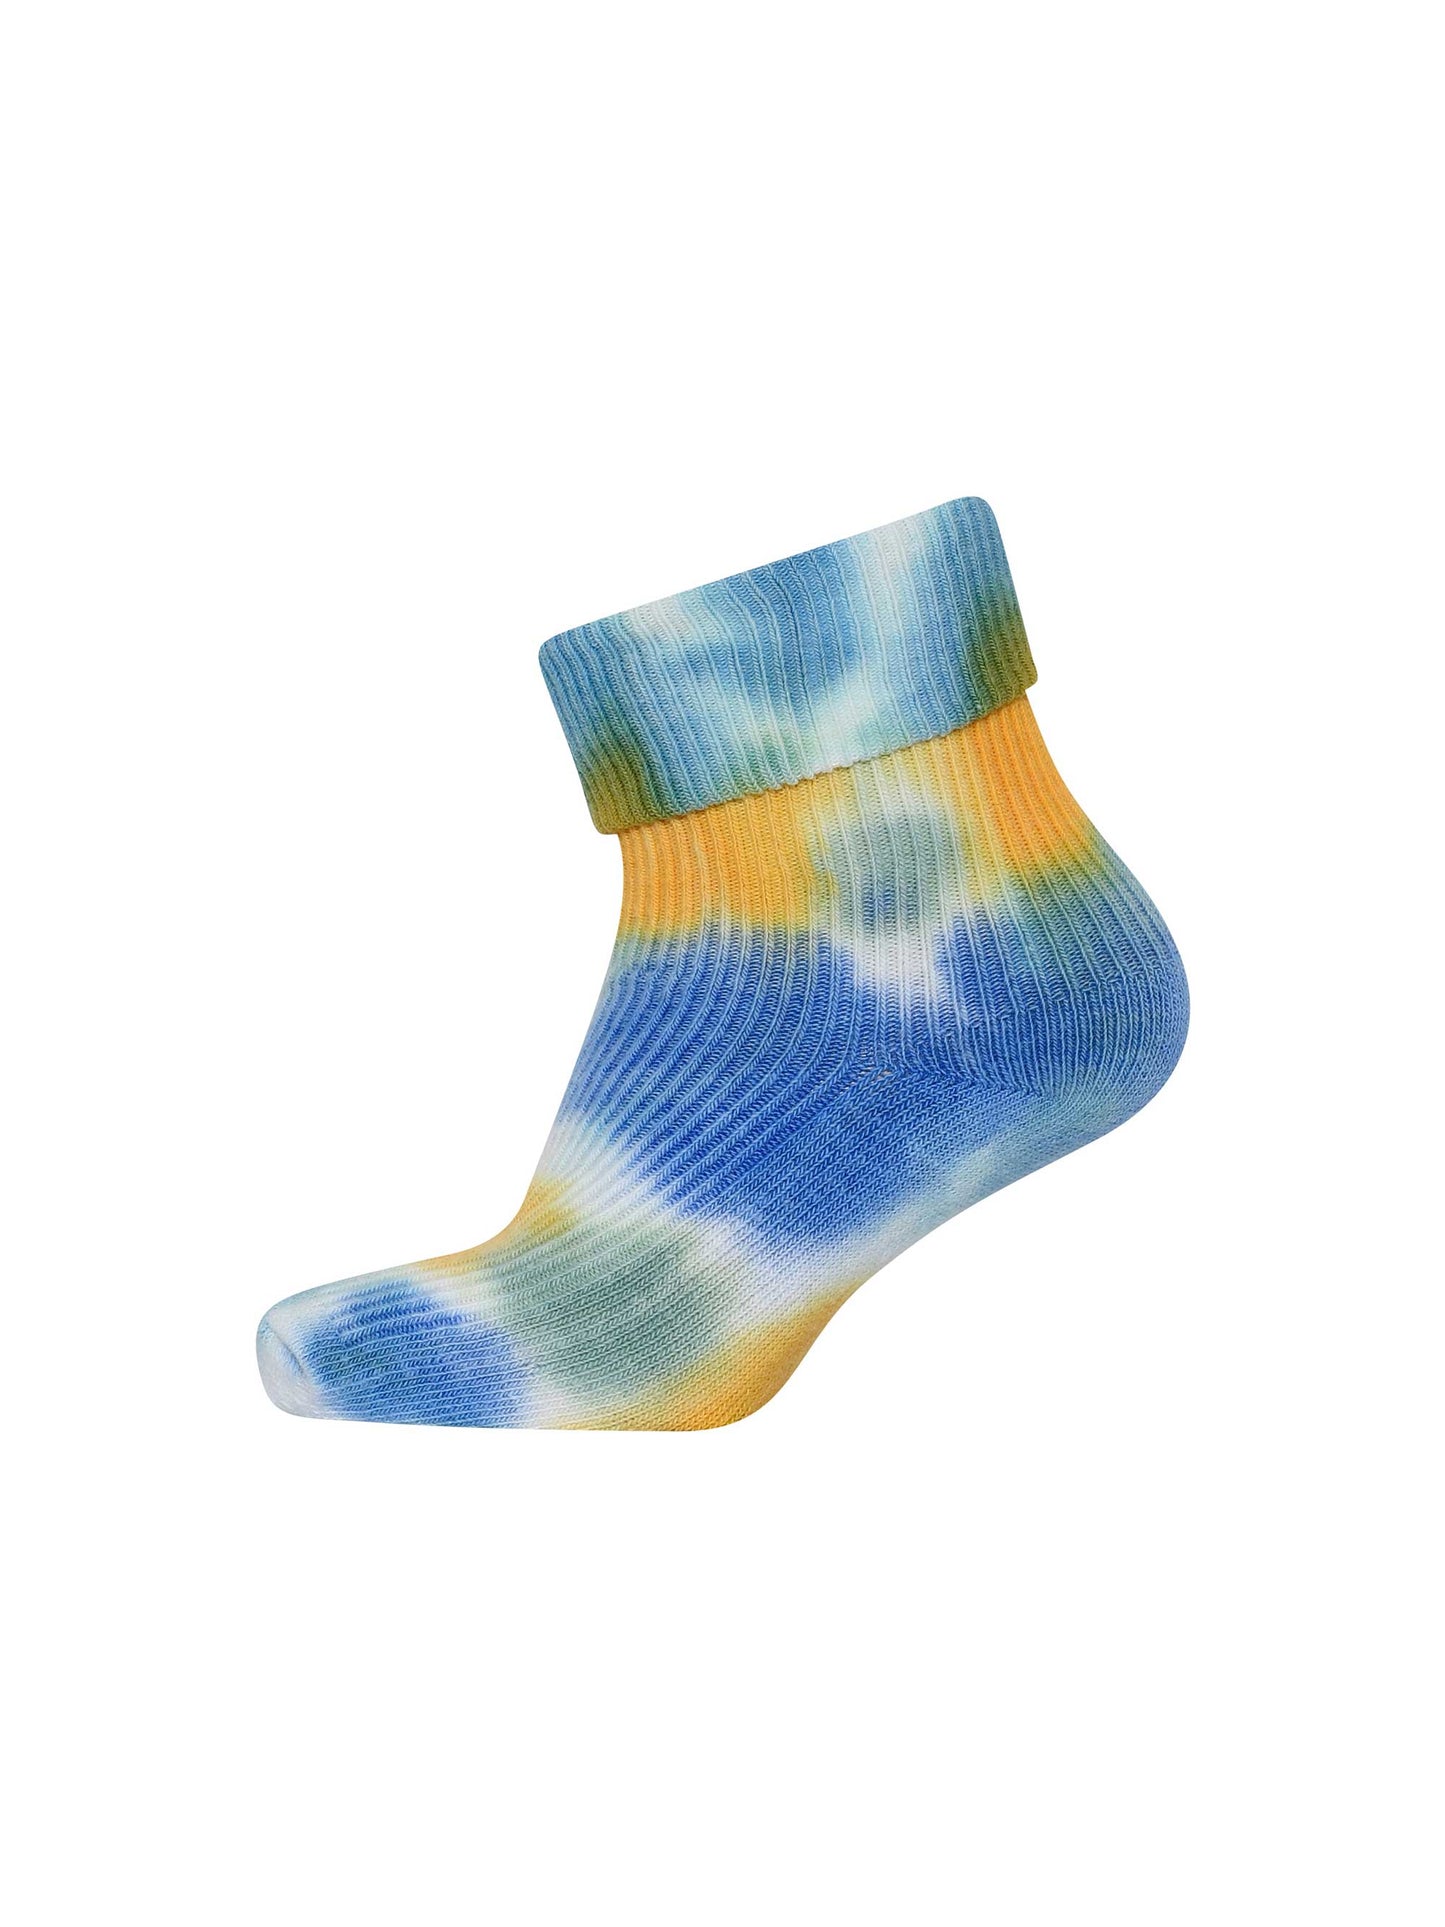 Blue Tie Dye Baby Socks